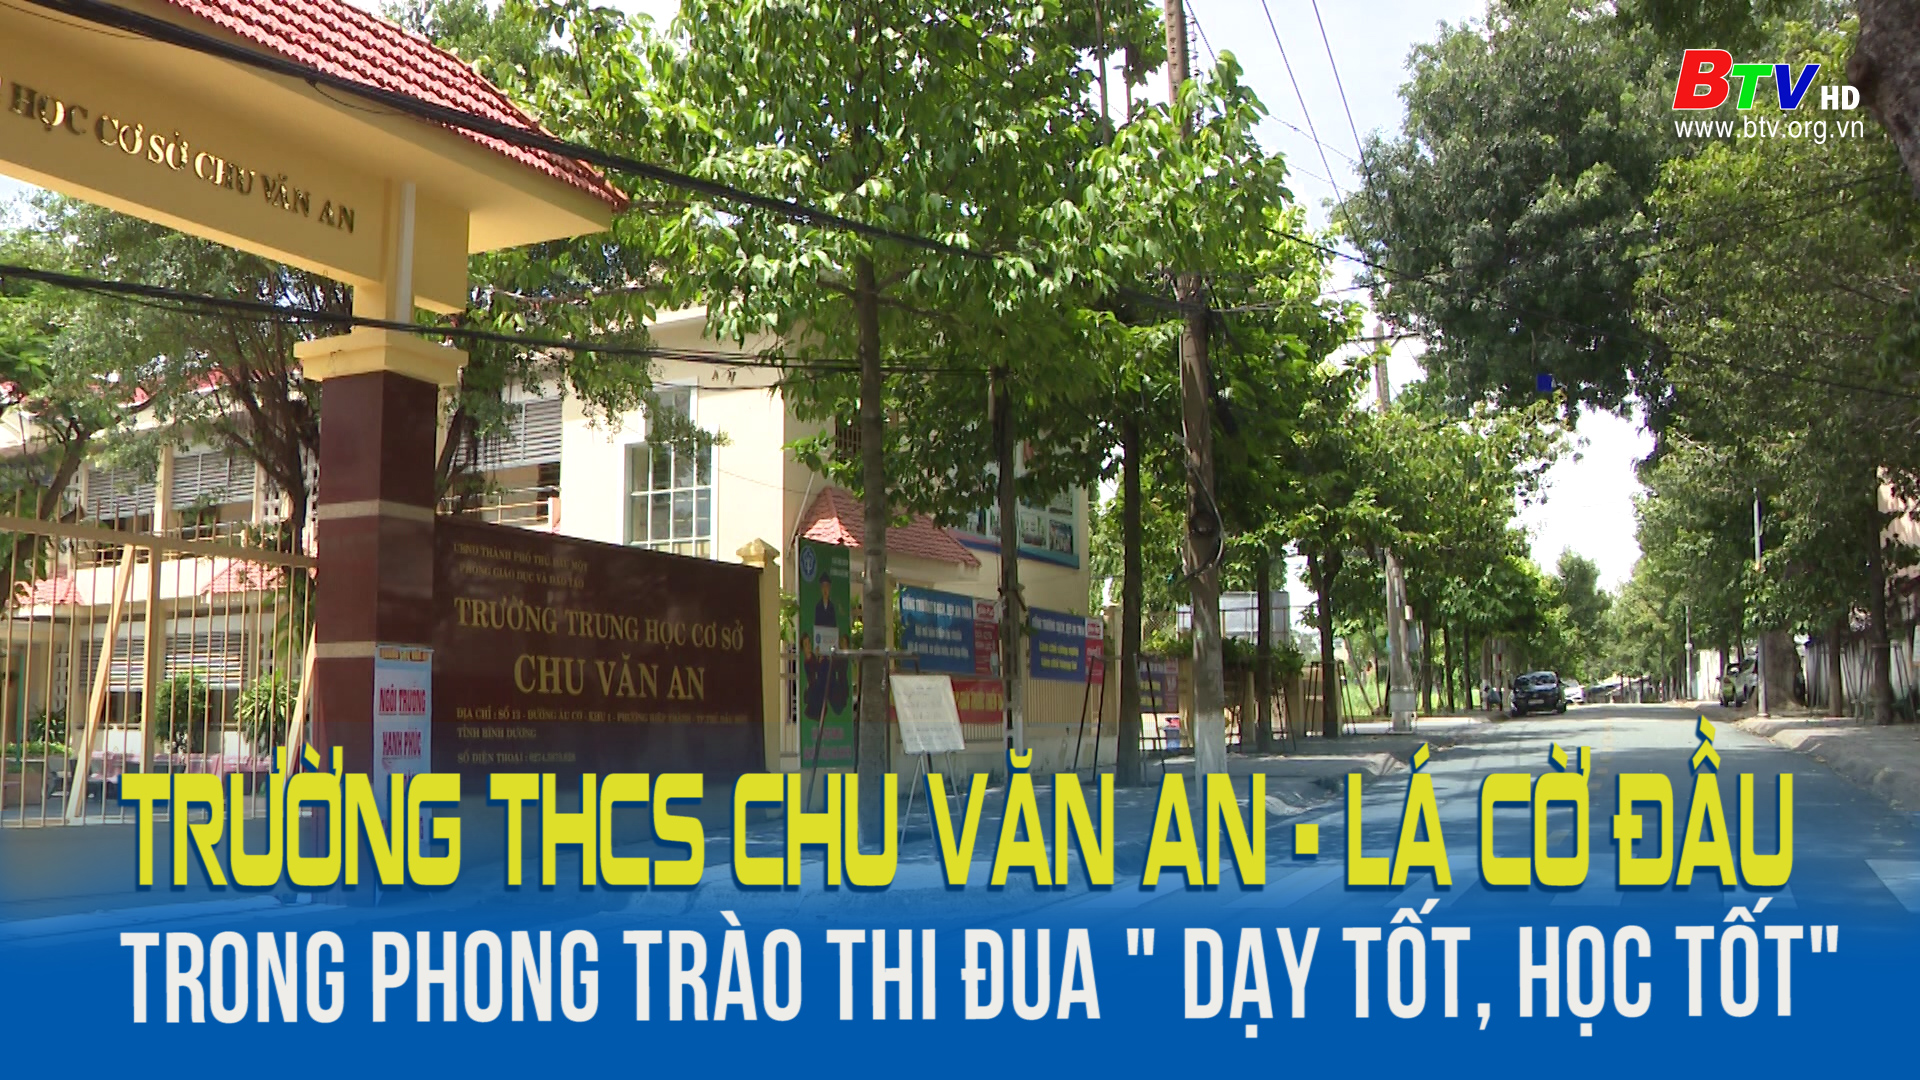 Trường THCS Chu Văn An – Lá cờ đầu trong phong trào thi đua “Dạy tốt, học tốt”